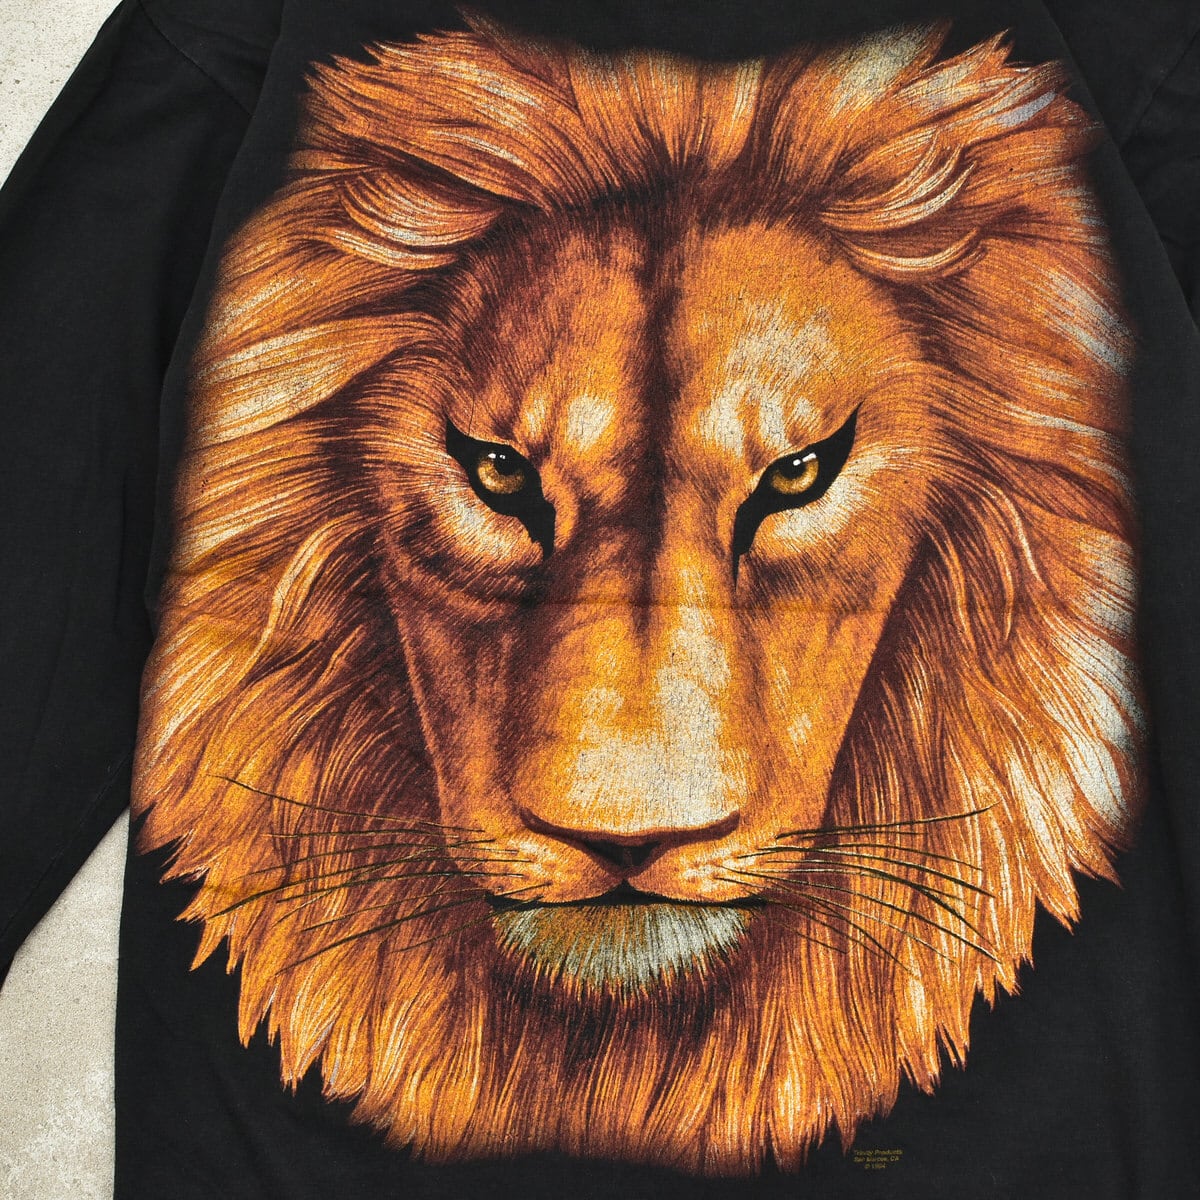 80s 90s LION ライオン Tシャツ アニマル柄 ビッグプリント